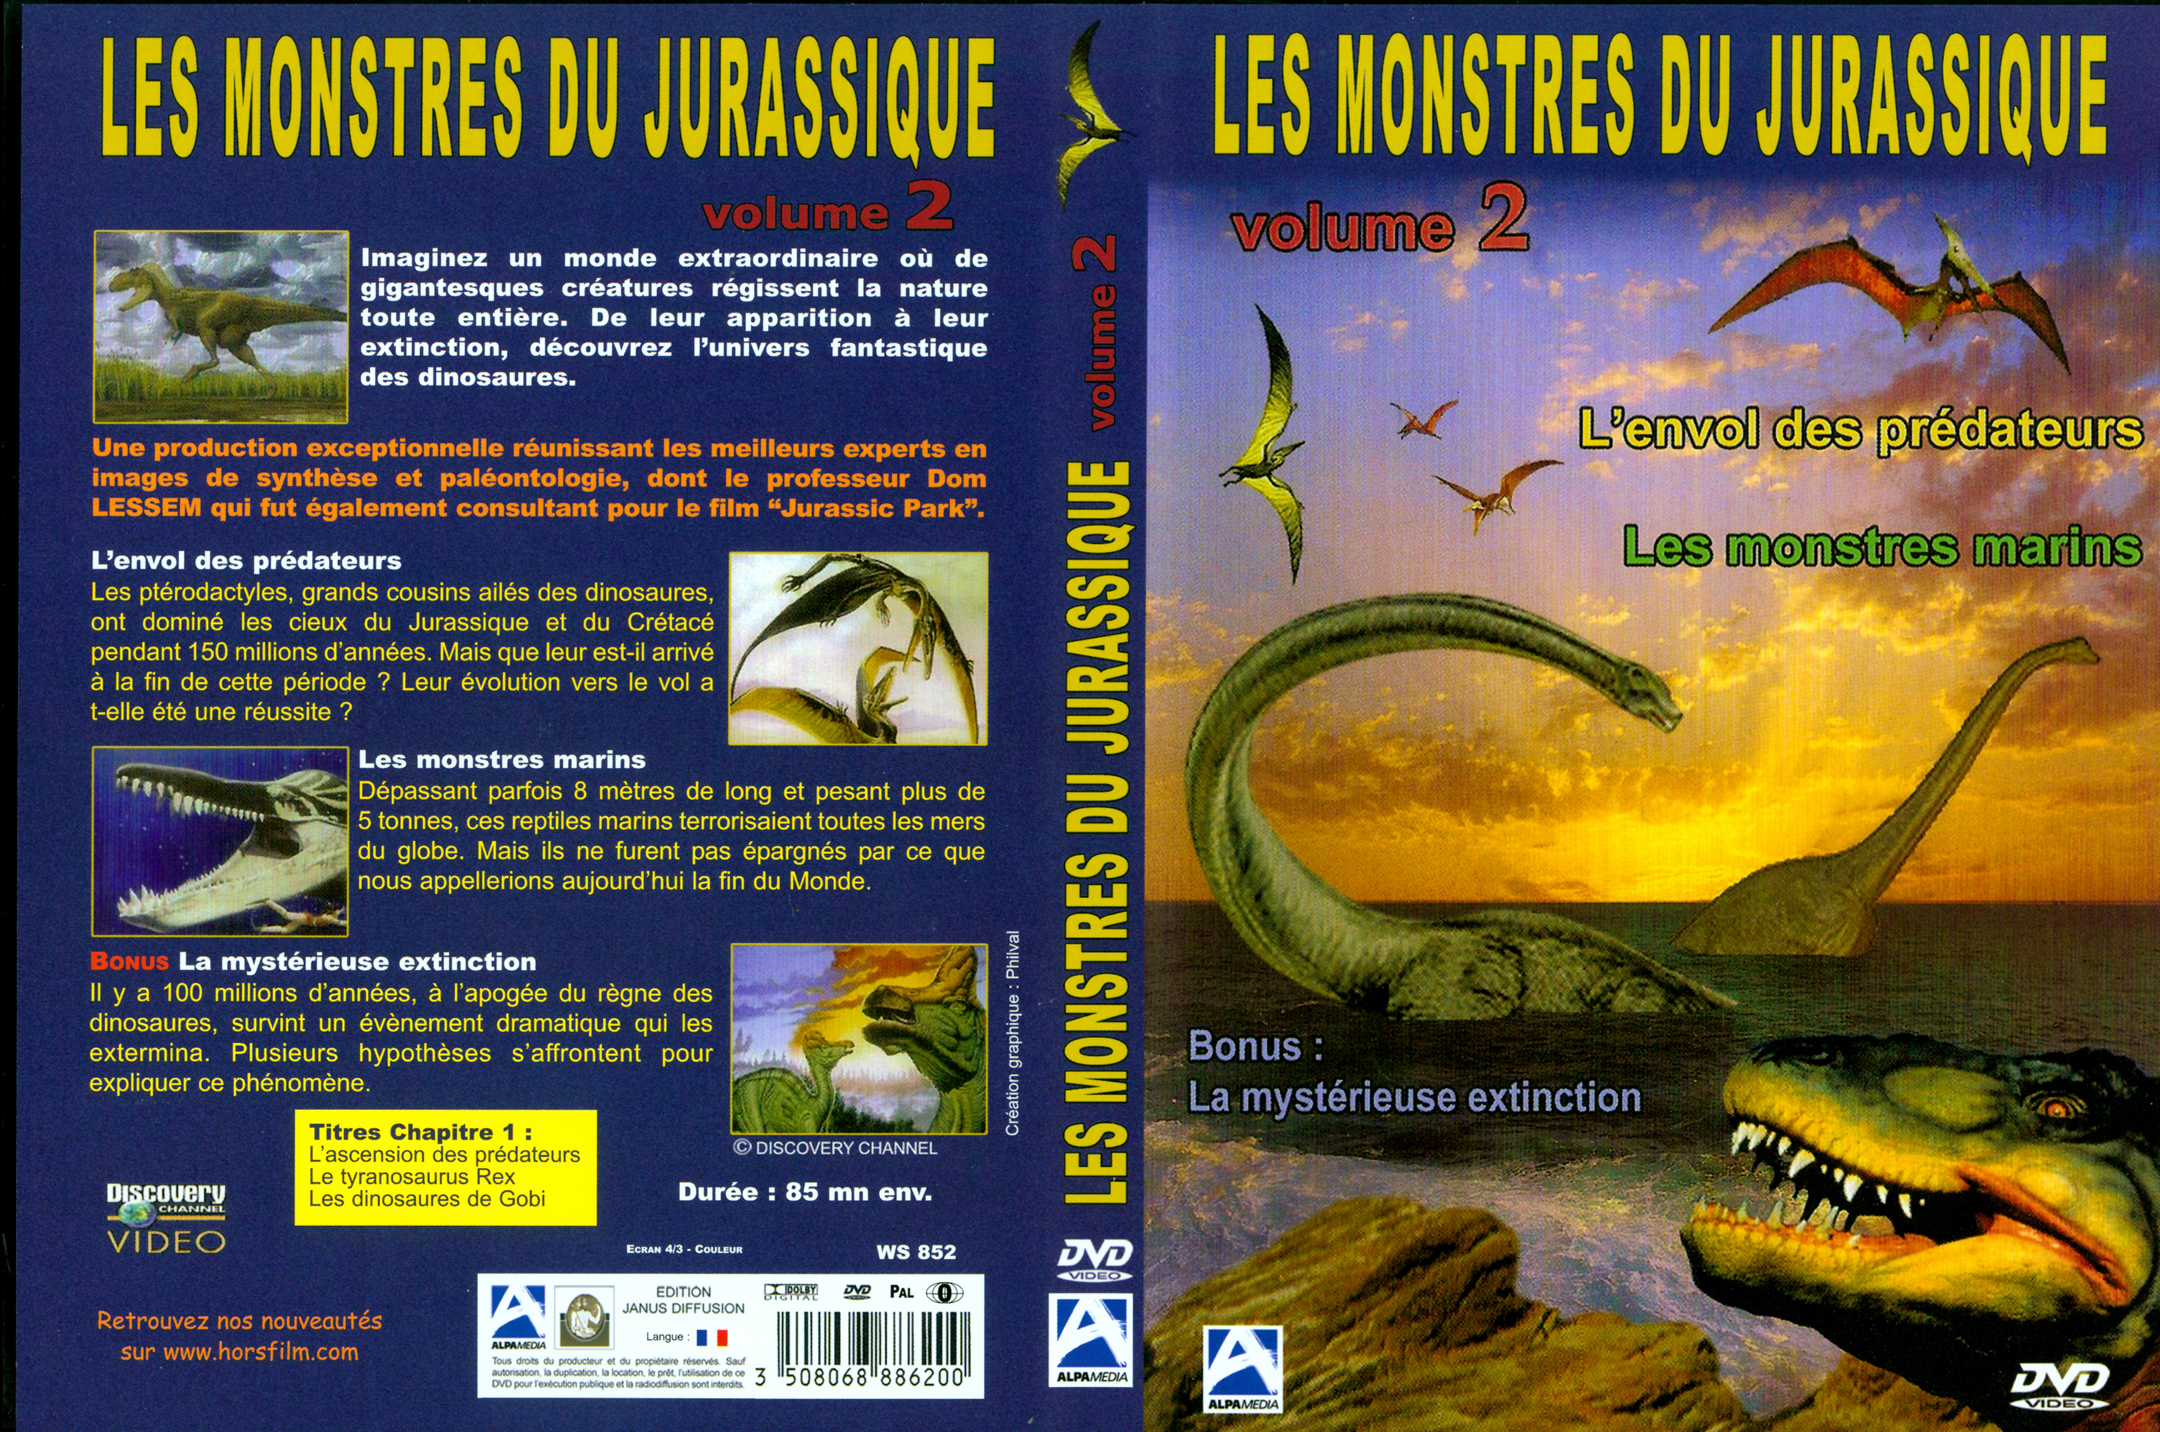 Jaquette DVD Les monstres du jurassique DVD 2